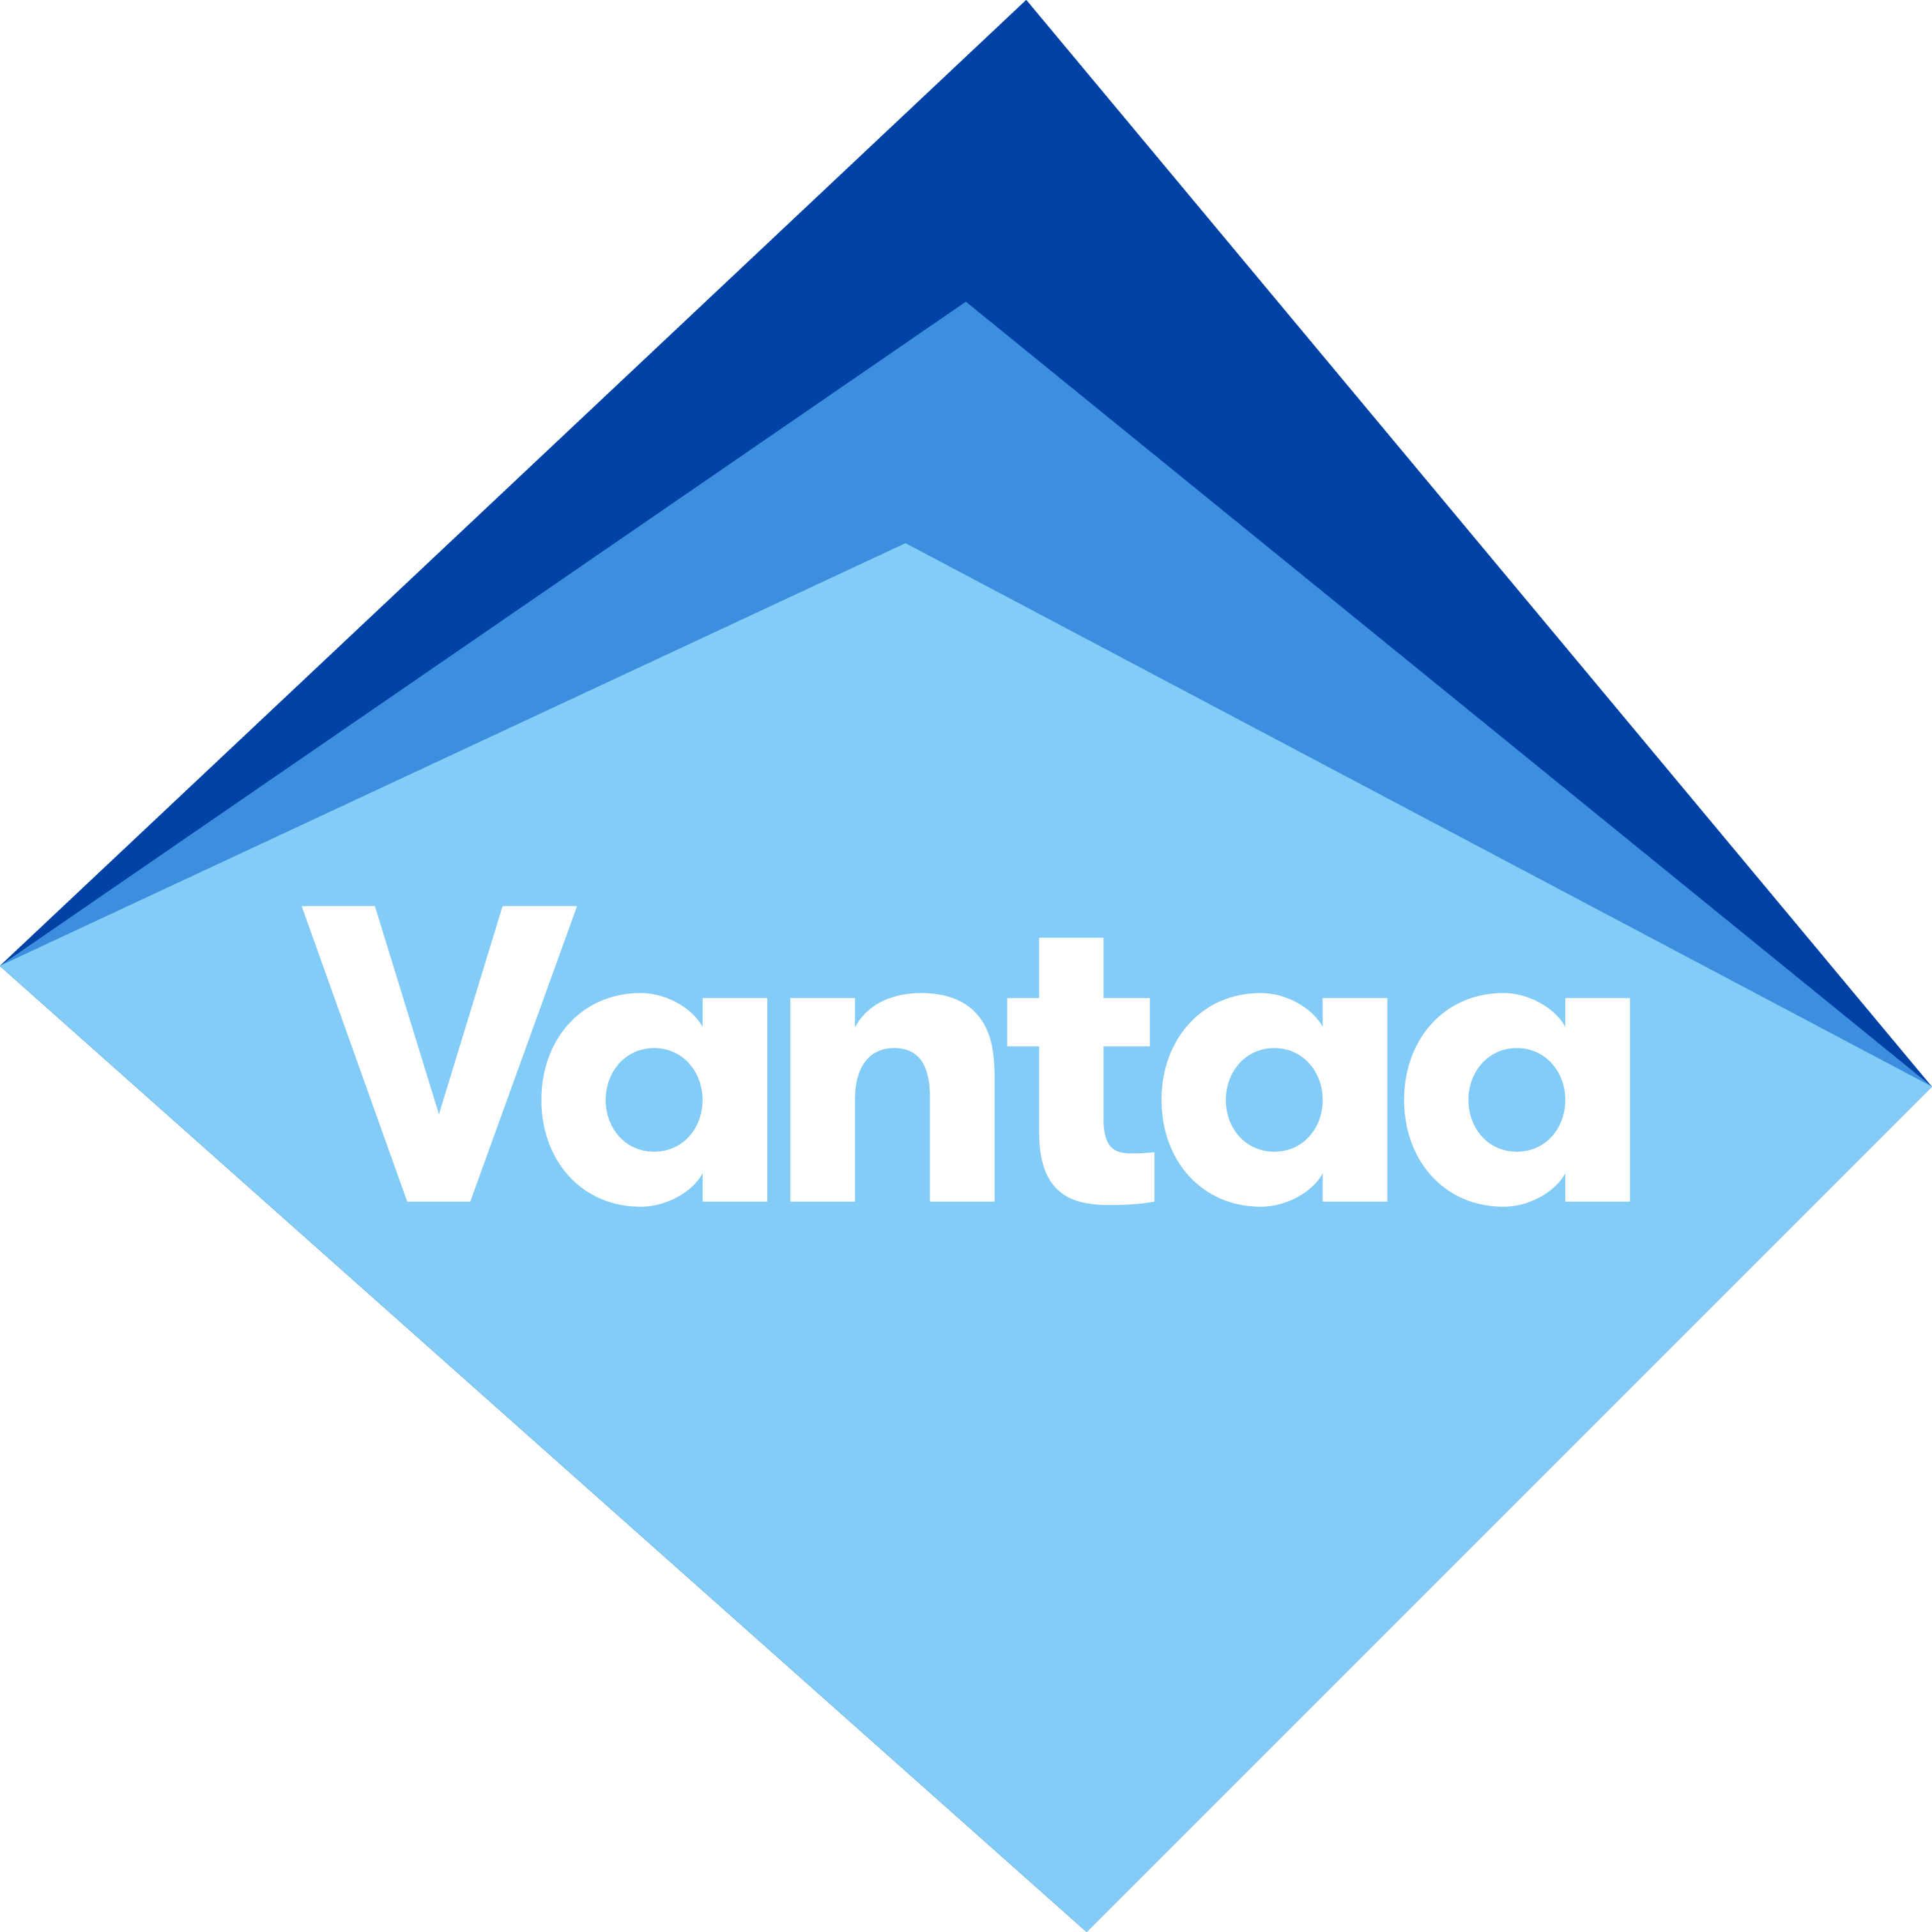 Vantaa-logo-rgb-su.png